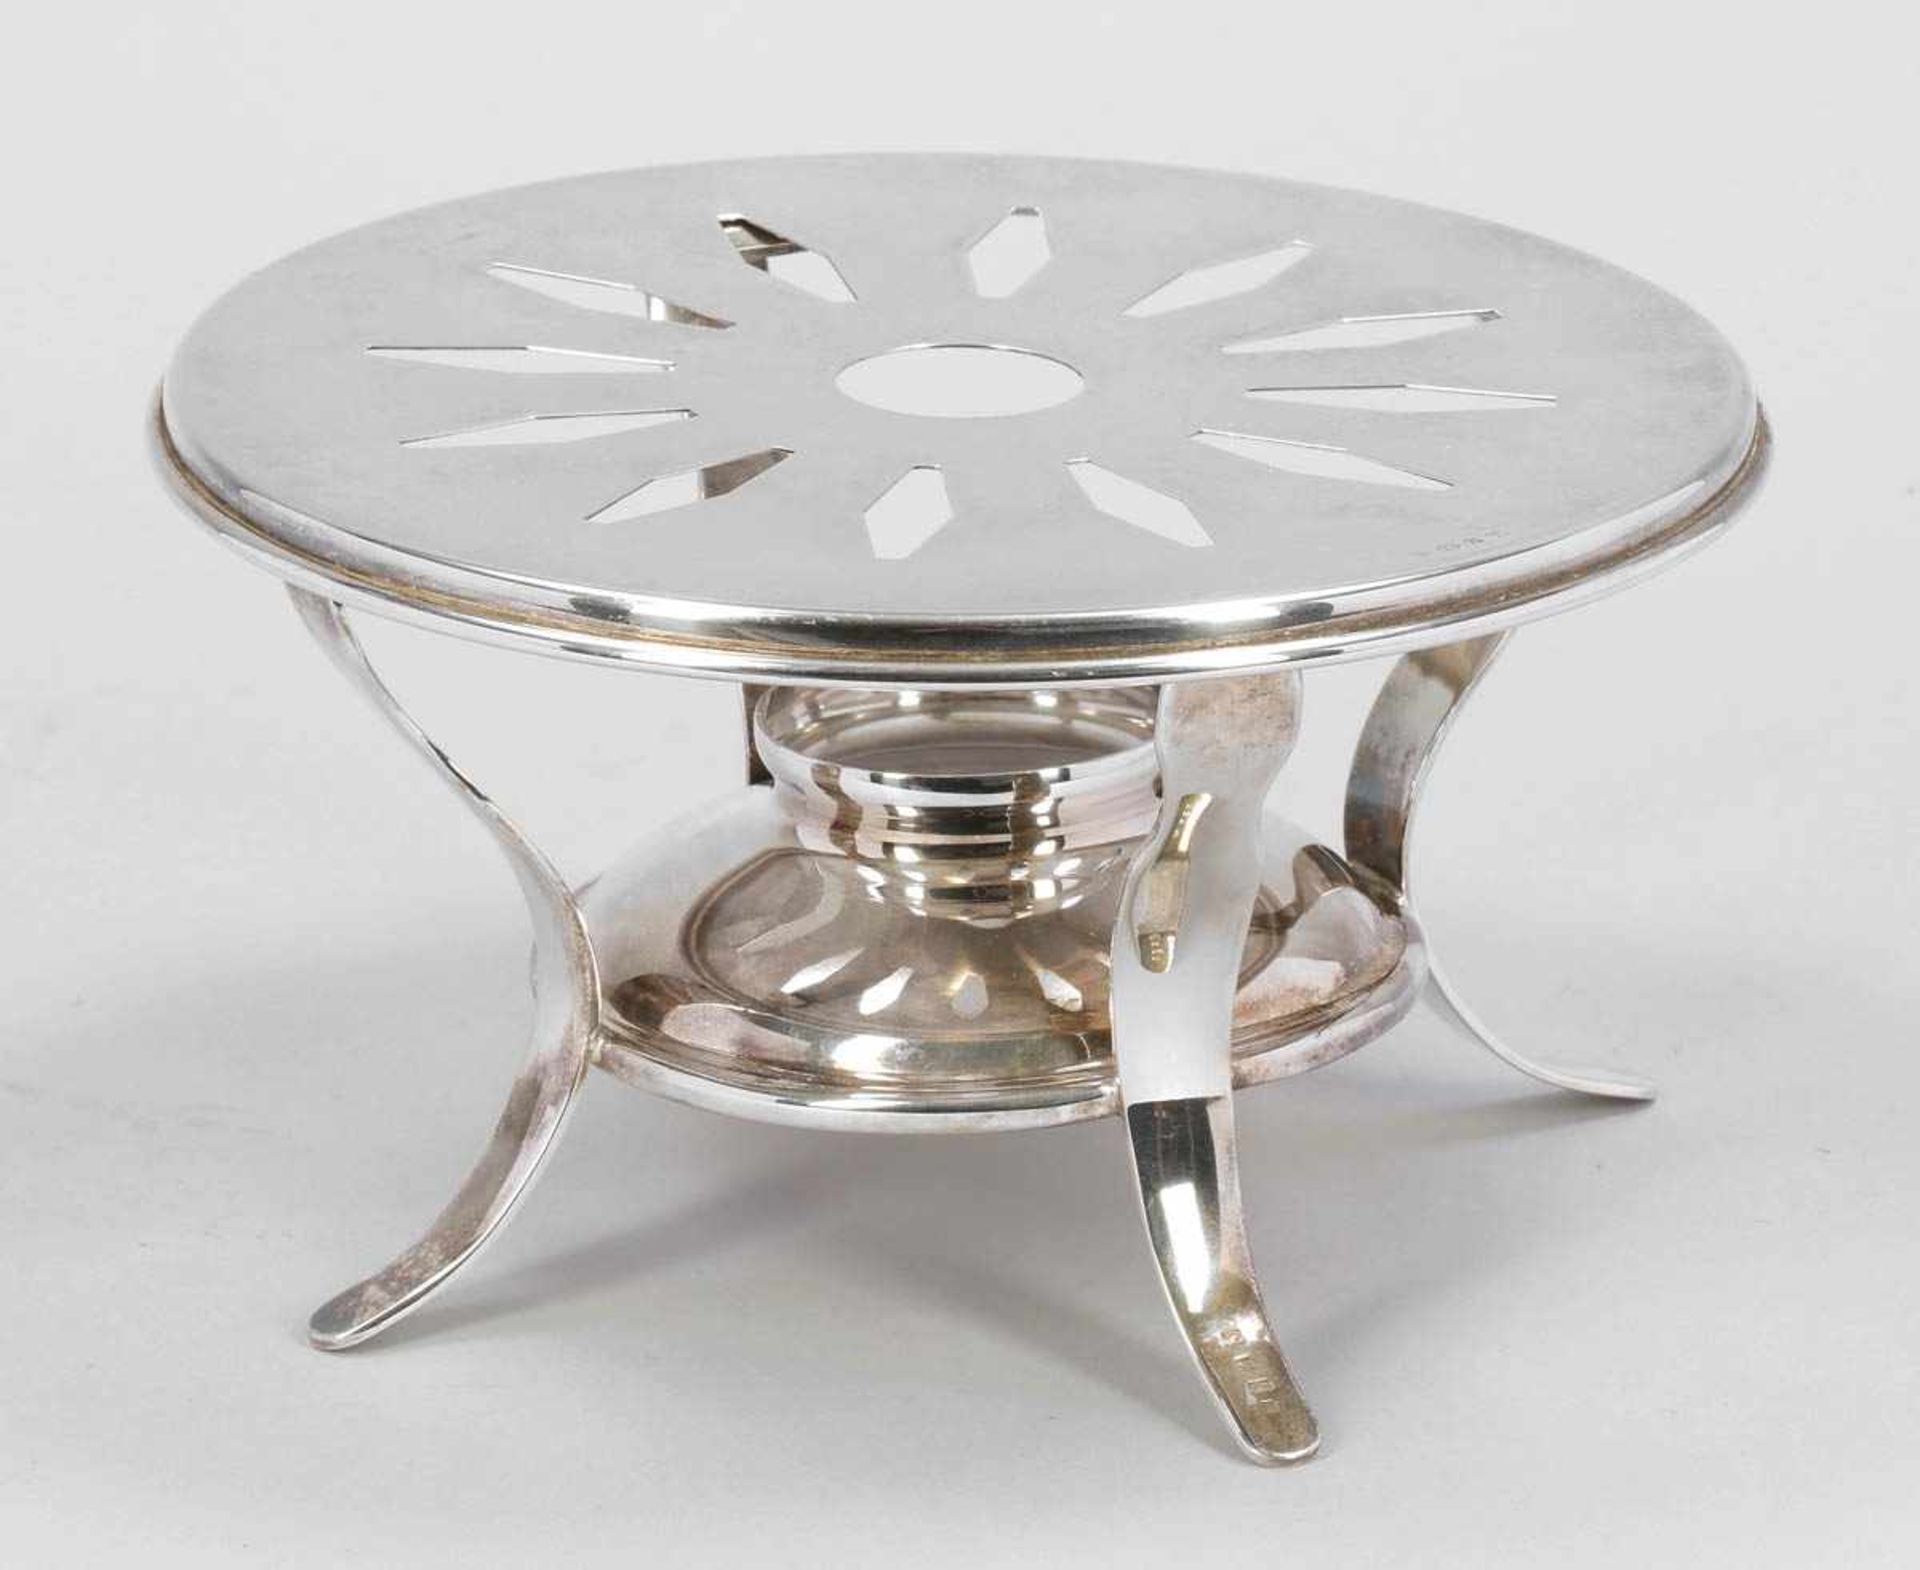 Stövchen / Tea Pot Stand 925er Silber. Punzen: Herst.-Marke, 925. H. 6,3 cm. D. 15,5 cm. Gew.: 188